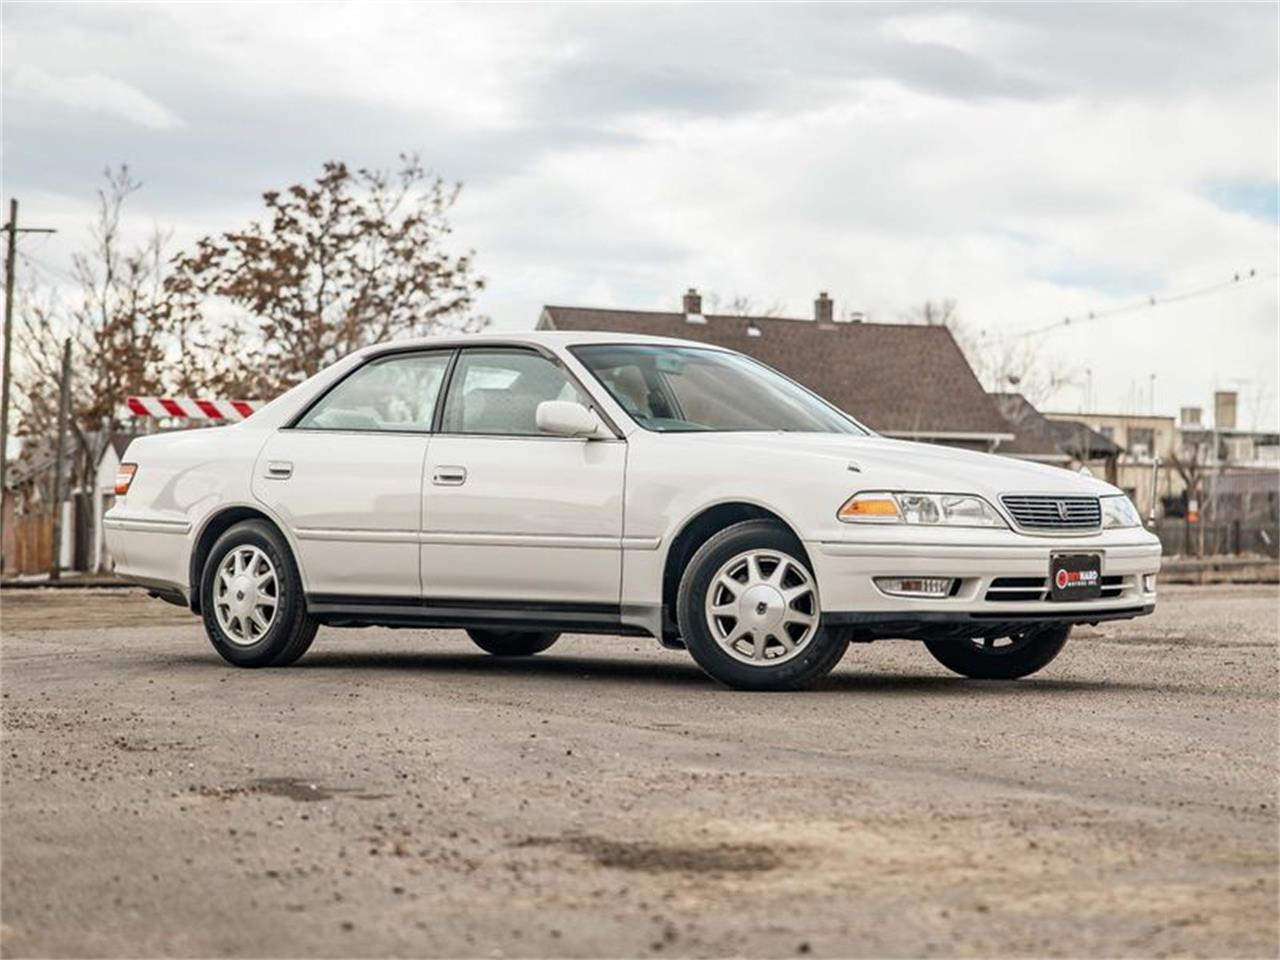 For Sale: 1997 Toyota Corona in Denver, Colorado for sale in Denver, CO